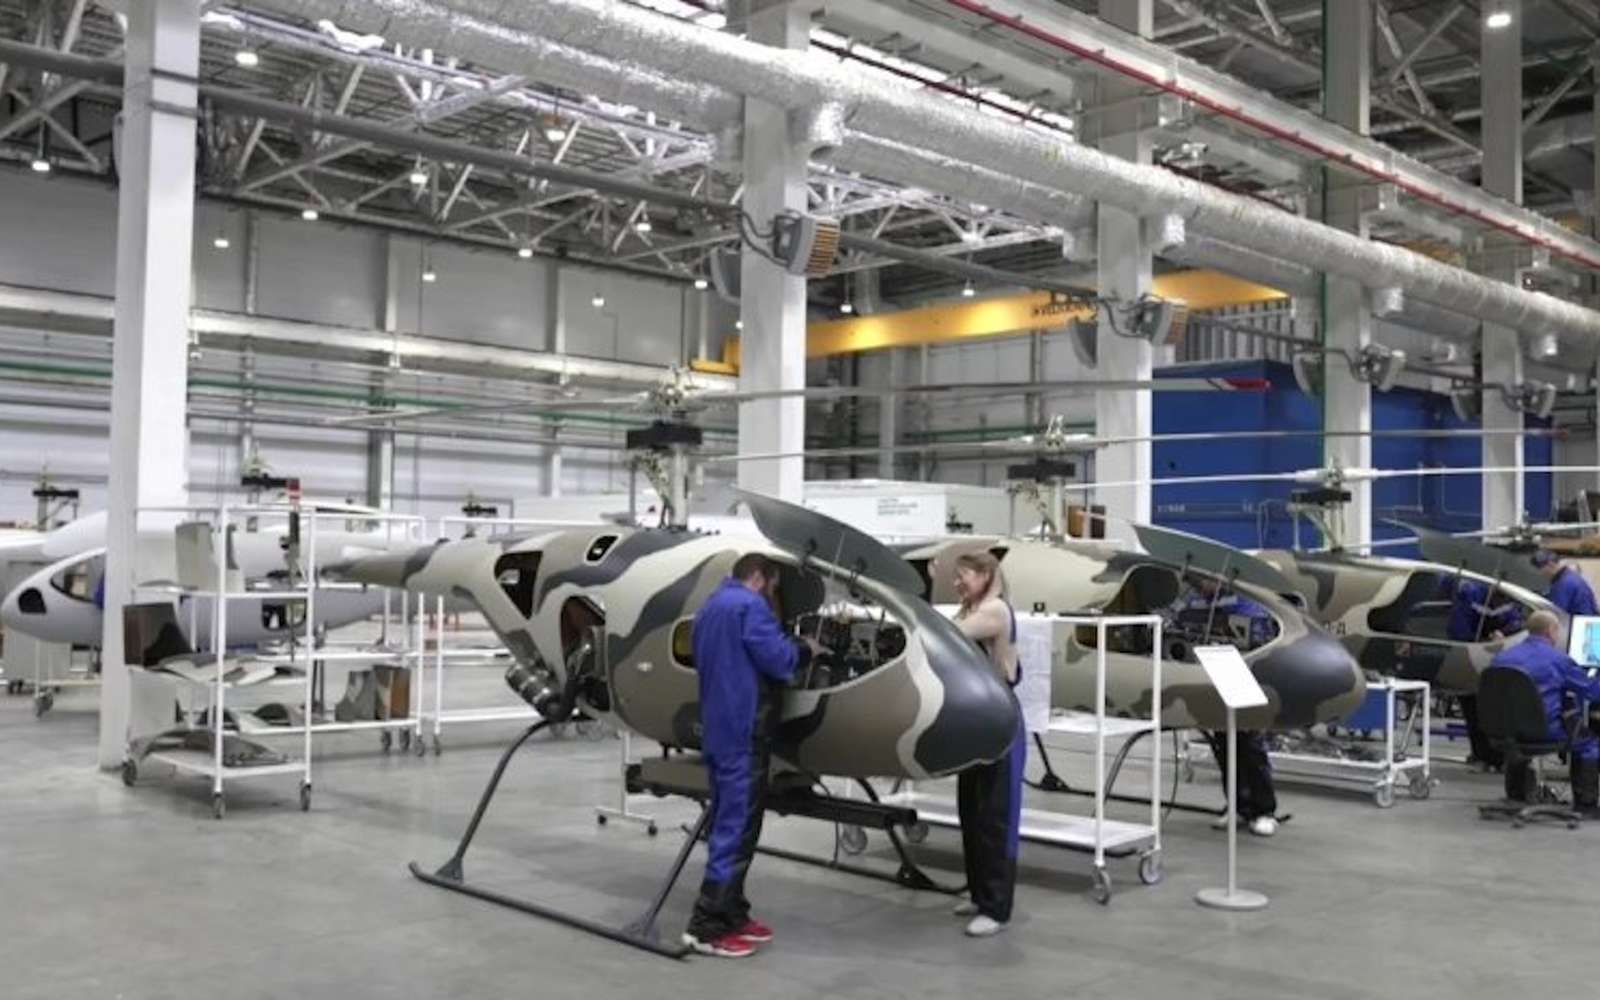 La Russie veut montrer sa capacité d'innovation avec la production de masse de ce drone hélicoptère armé